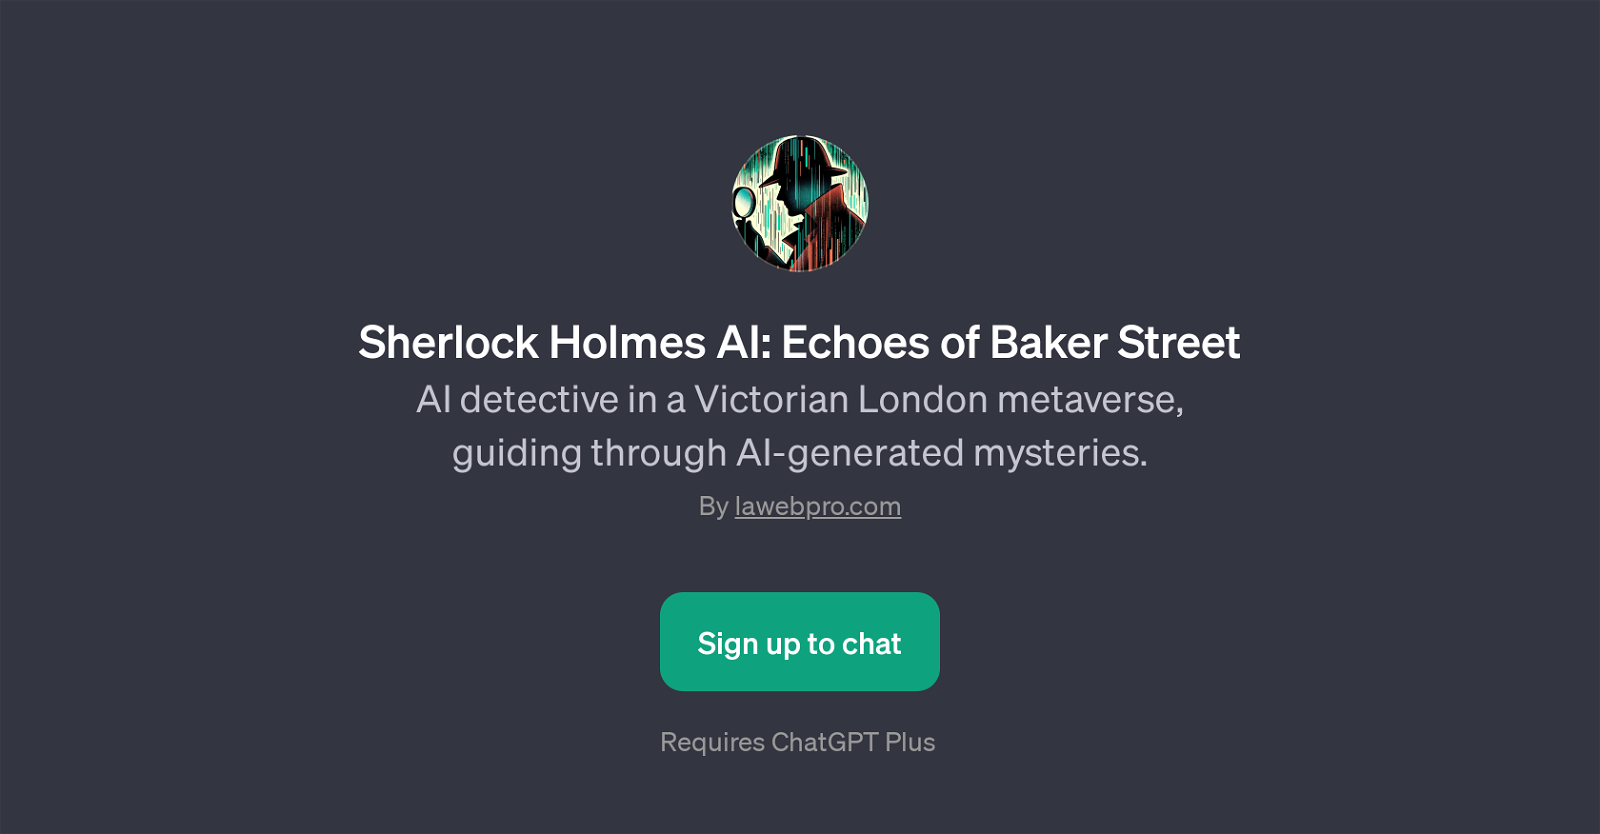 Sherlock Holmes AI: Echoes of Baker Street website